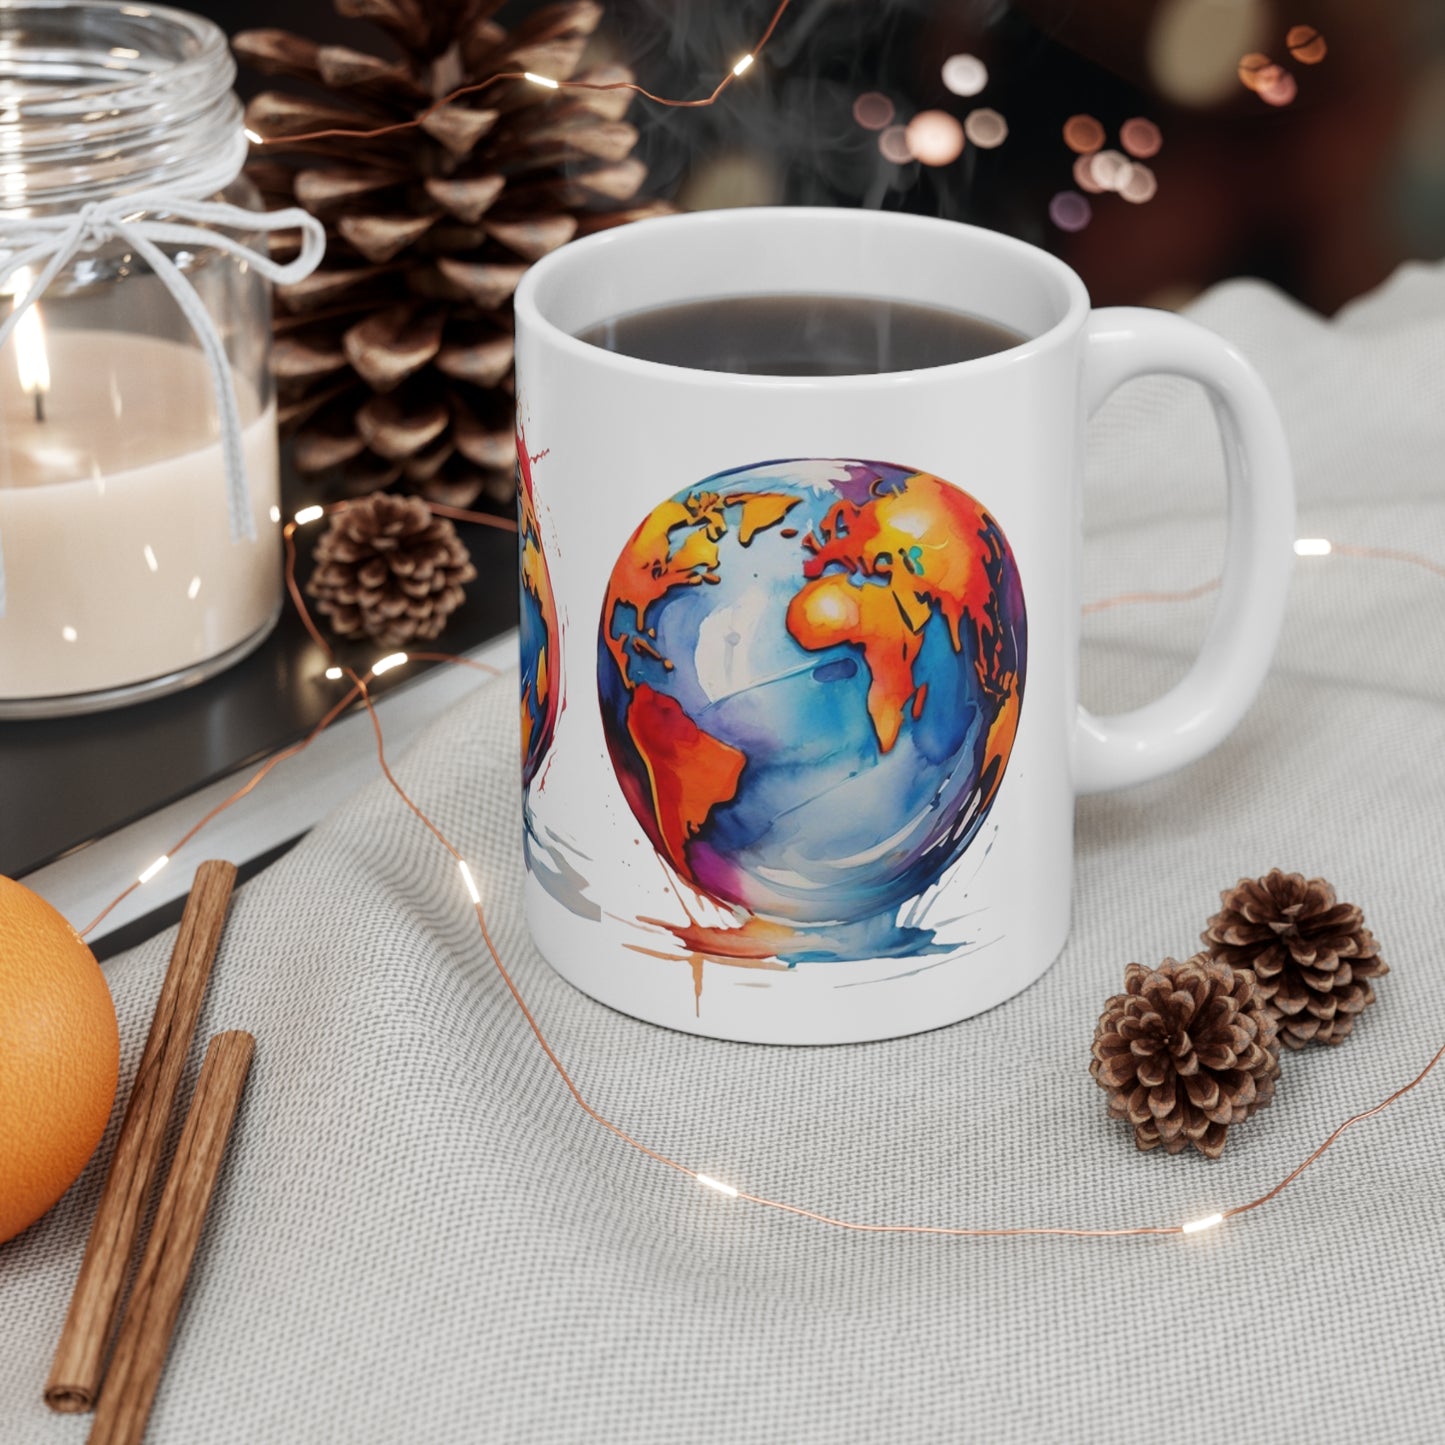 Messy Planet Earth Artwork Mug - Ceramic Coffee Mug 11oz